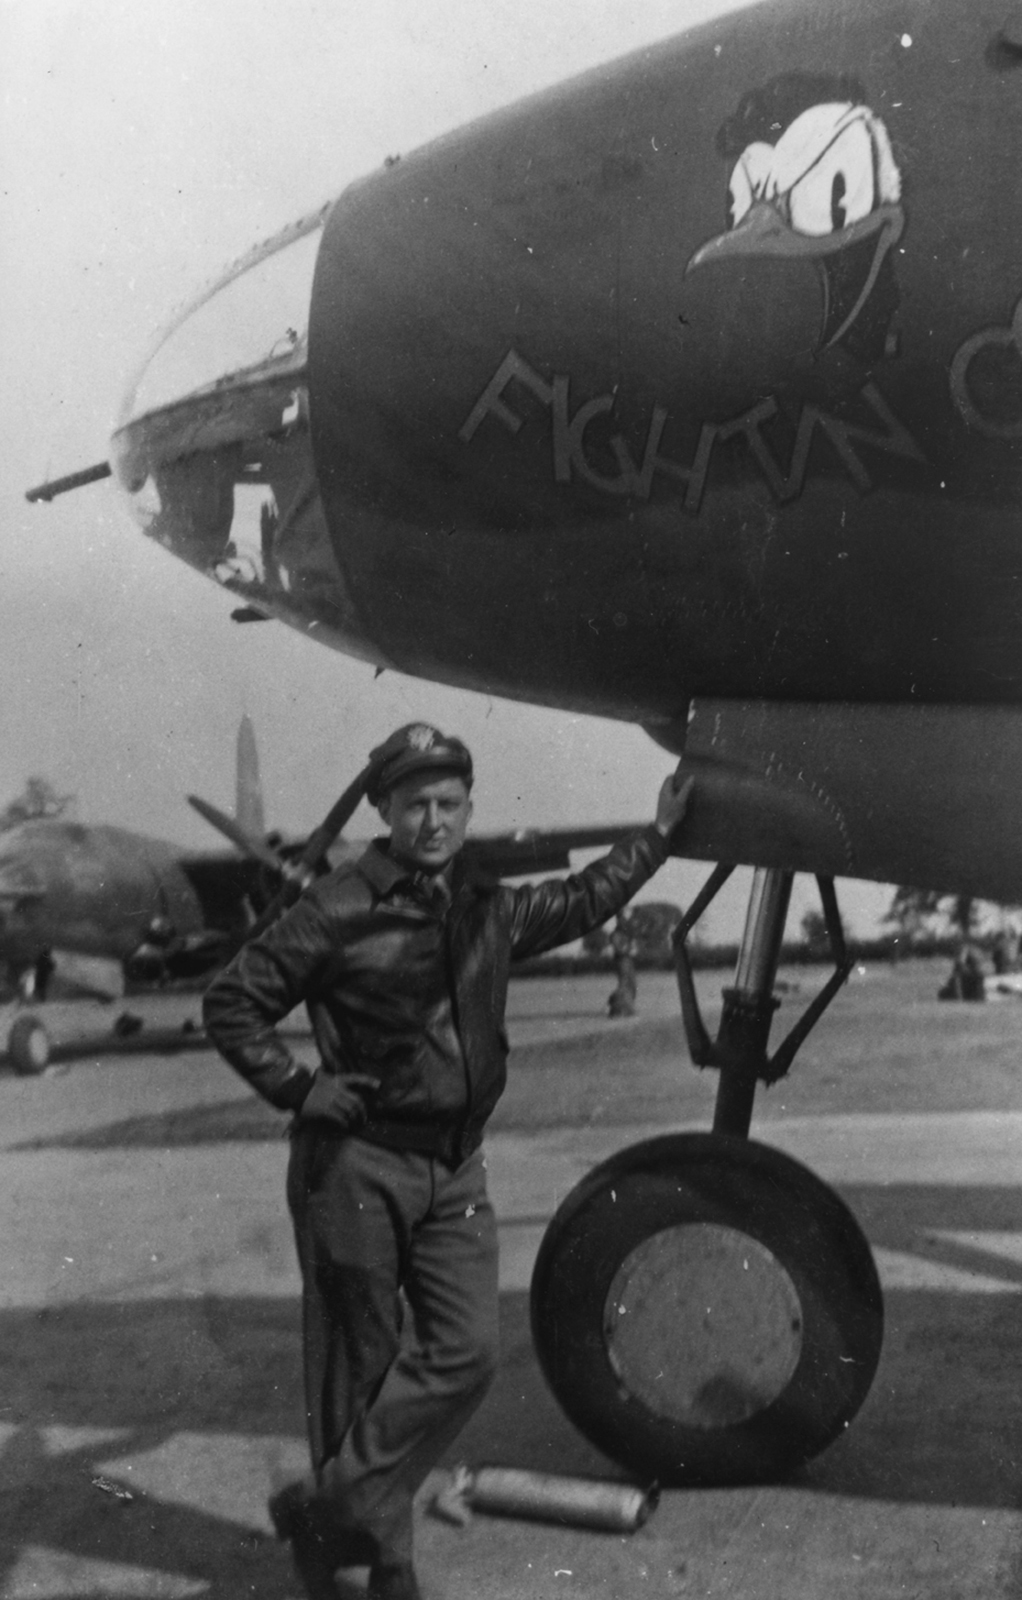 [Monogram] 1/48 - DOUGLAS B-26B Marauder    42-95843 "Rationed Passion" 391 BG 575BS - 1944 Essex  (VINTAGE) - Page 13 B-26b-17